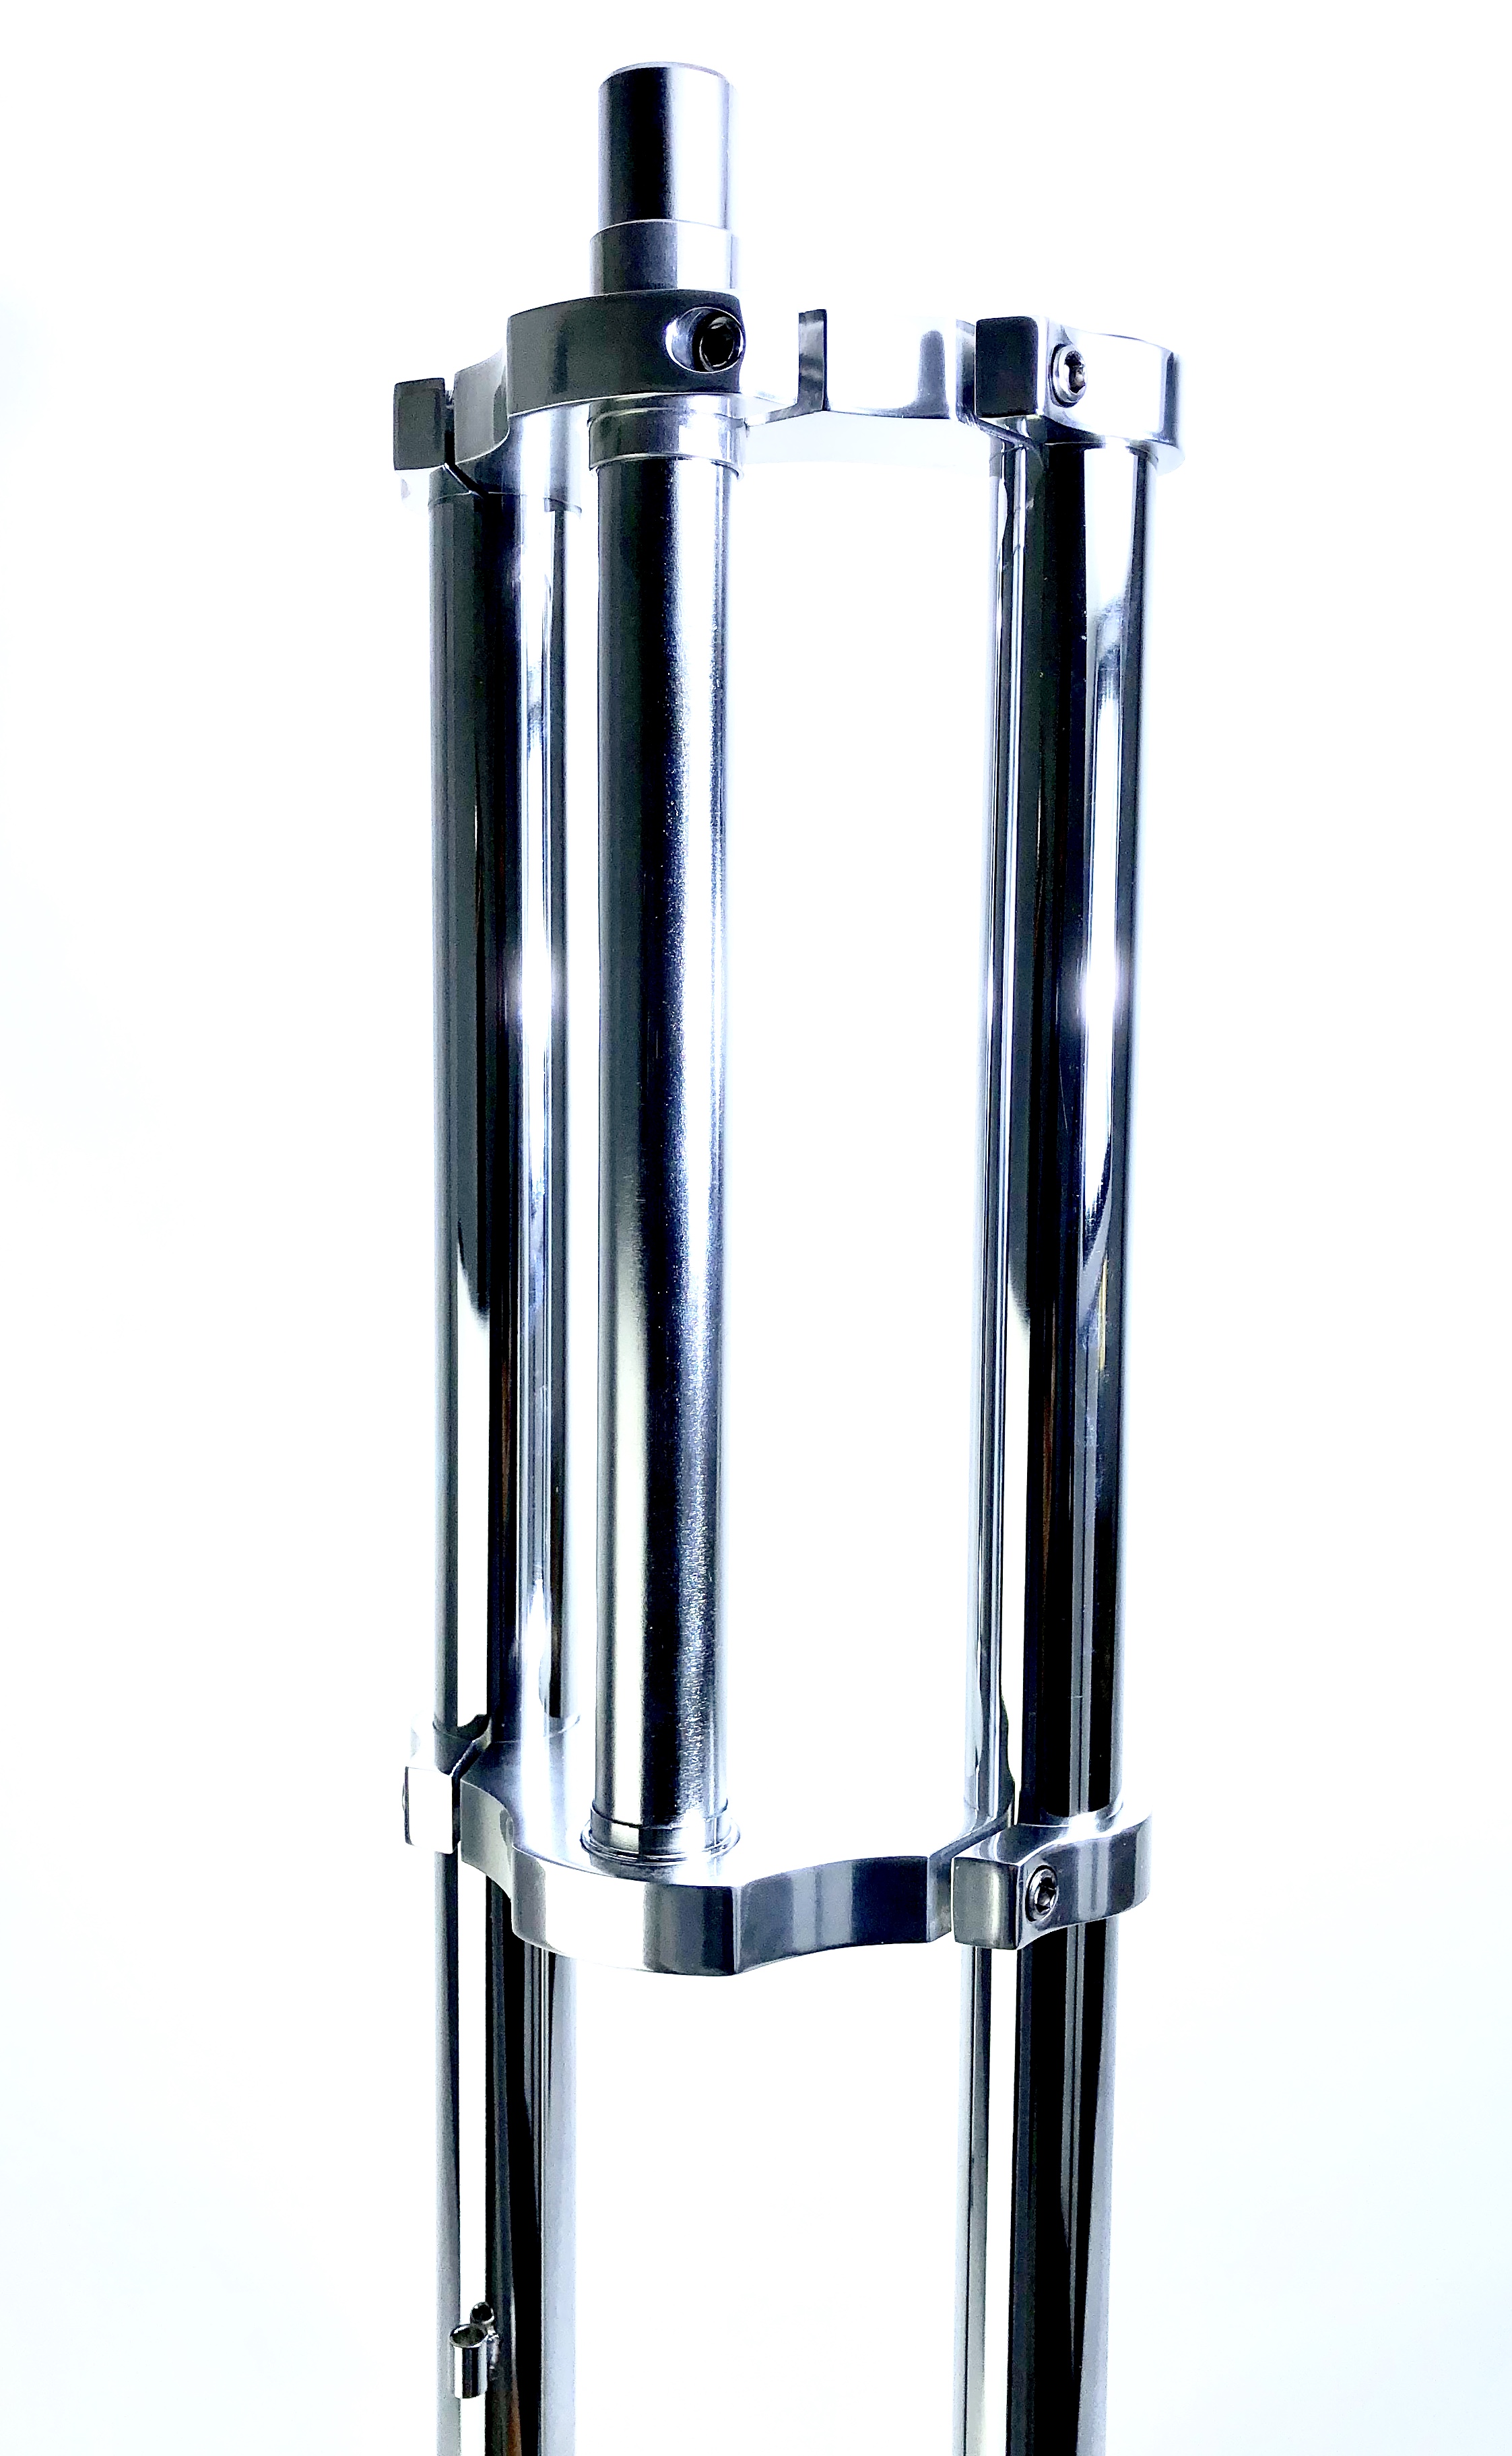 Forcella a doppia piastra lungheszza cannotto, scostamento  840 mm acciaio cromato e alluminio lucido, 1 1/8